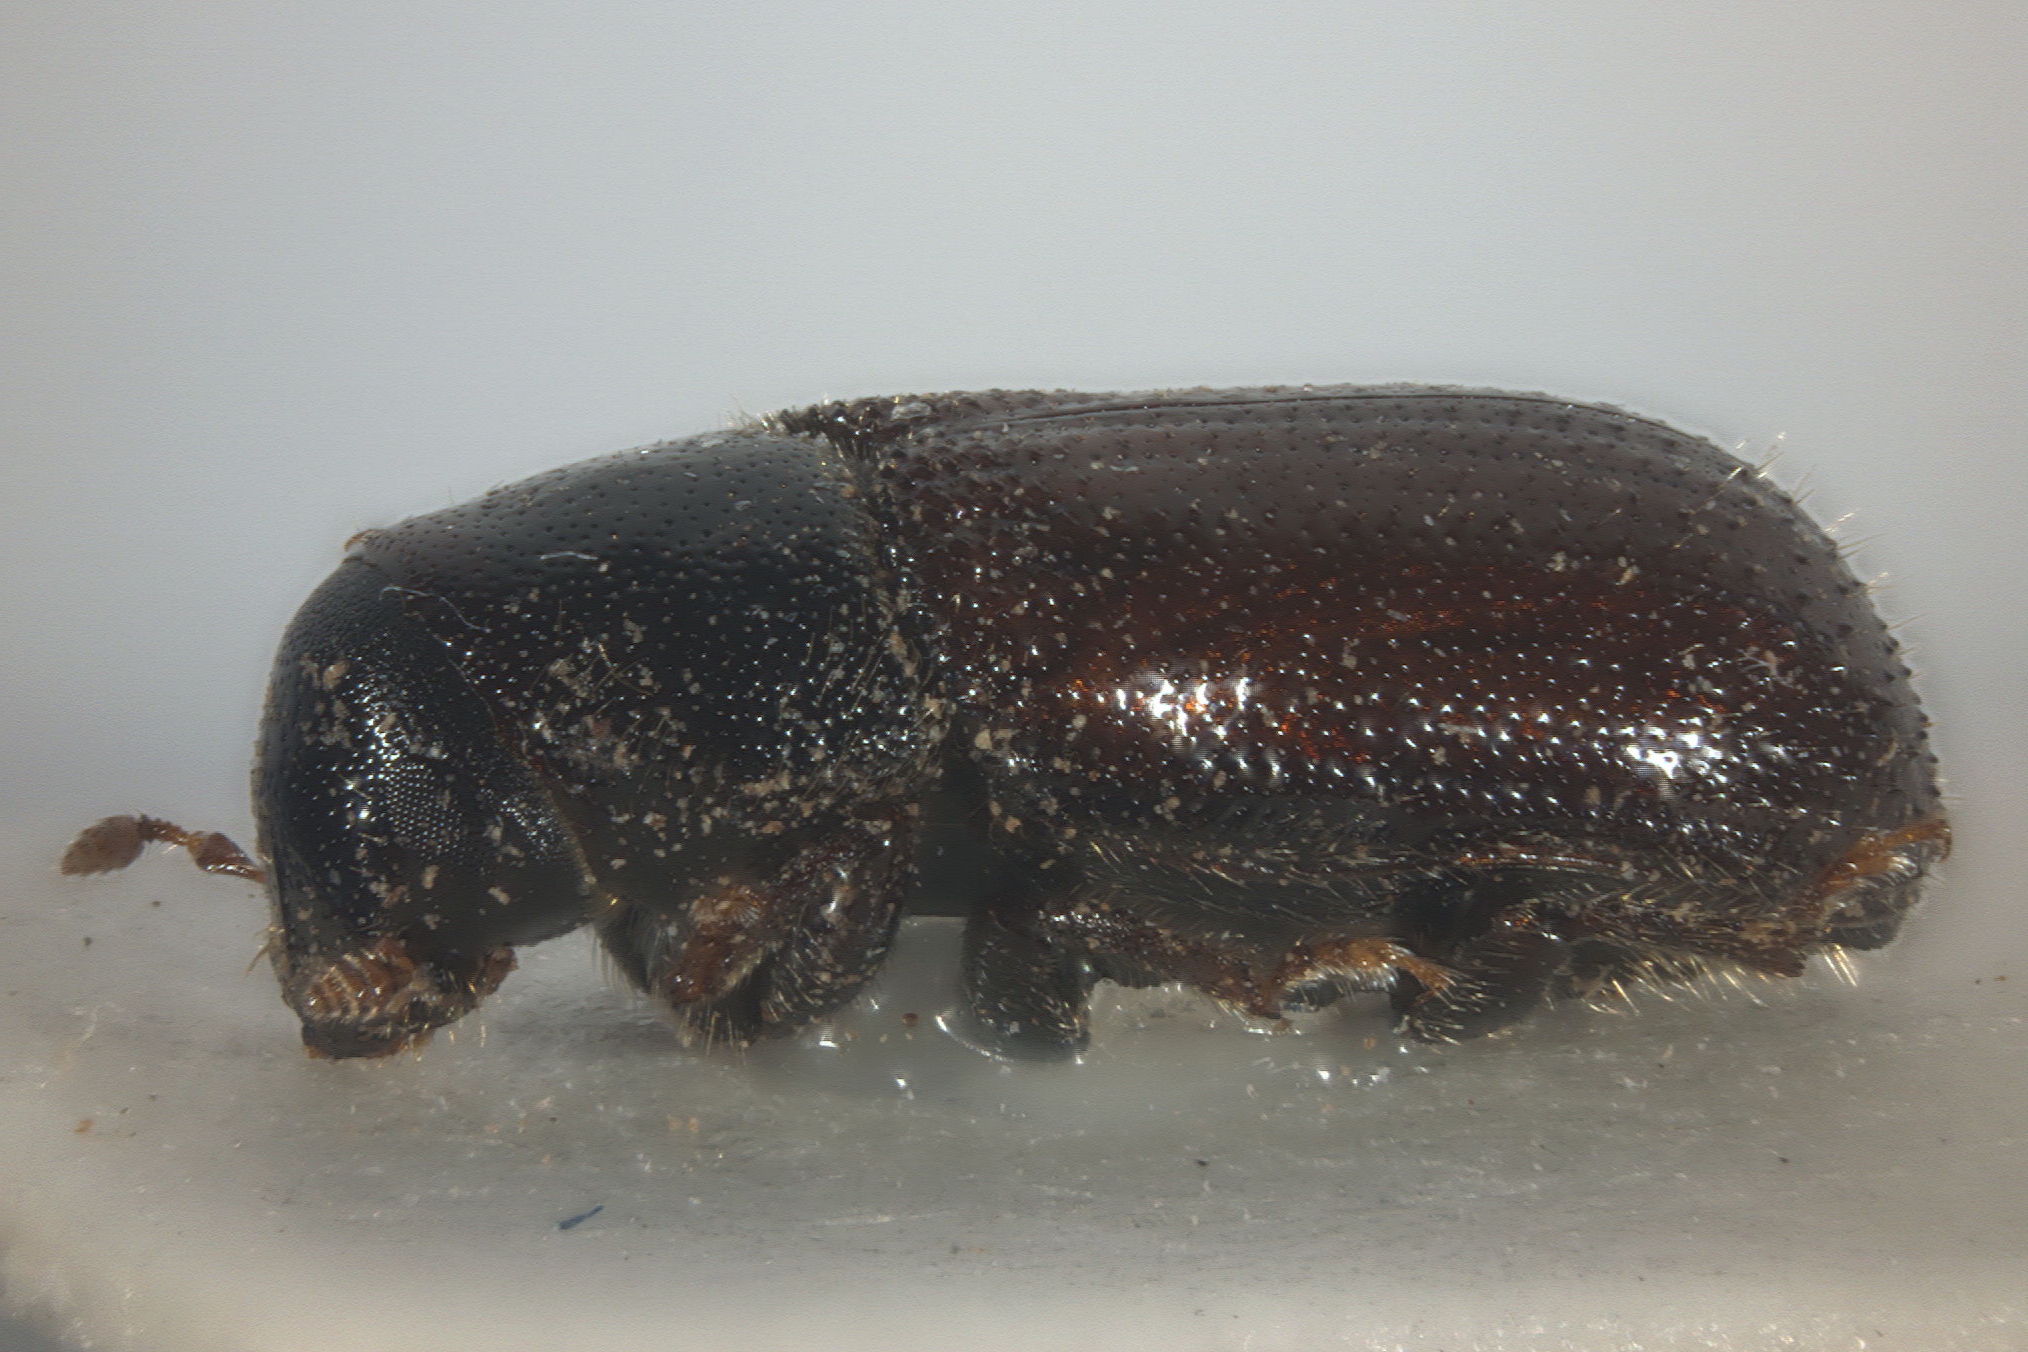 Kleine braune Käfer » Die 5 häufigsten Arten